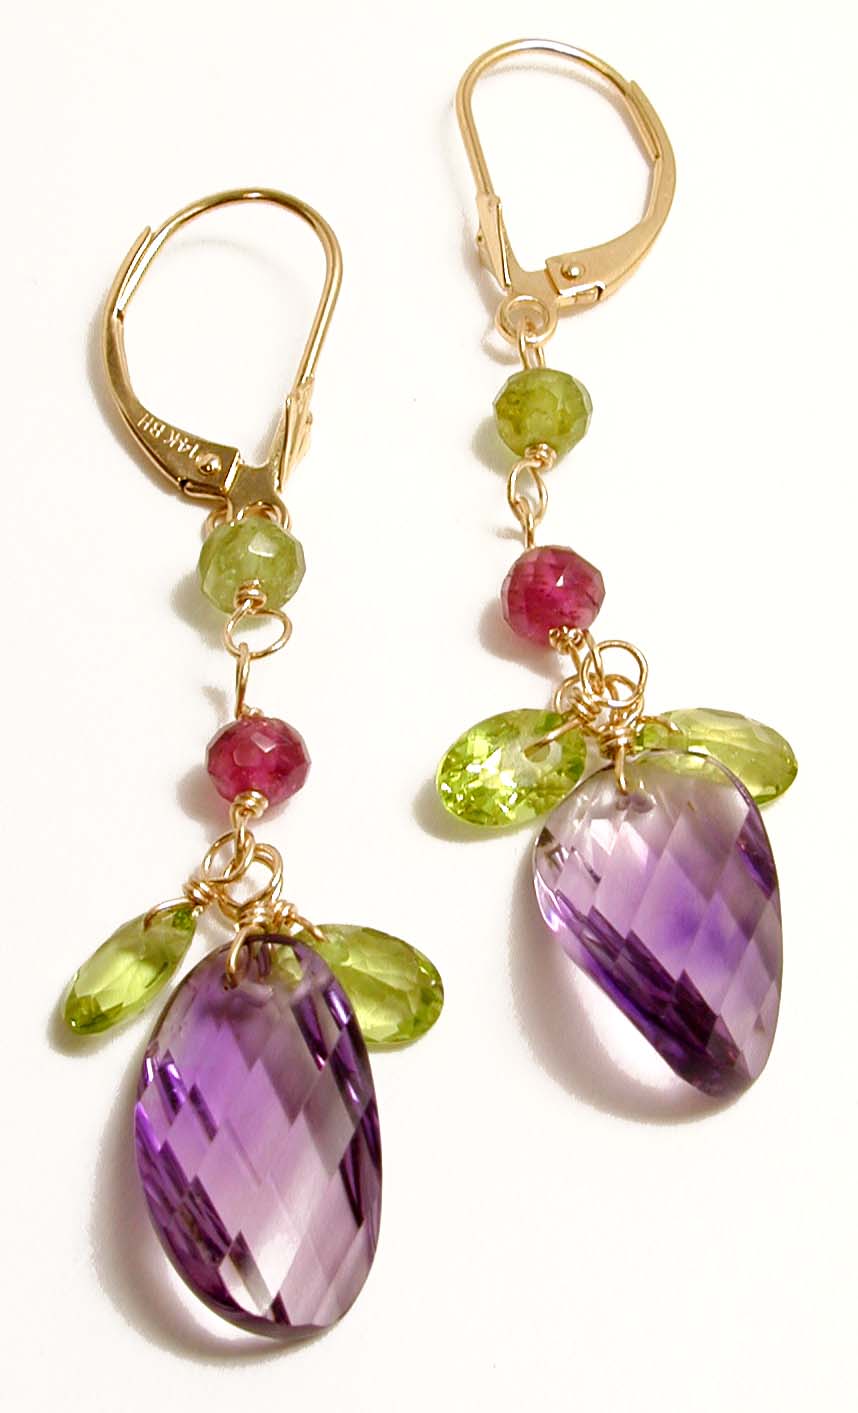 
Multicolor Gemstone and Amethyst Drop Earrings
